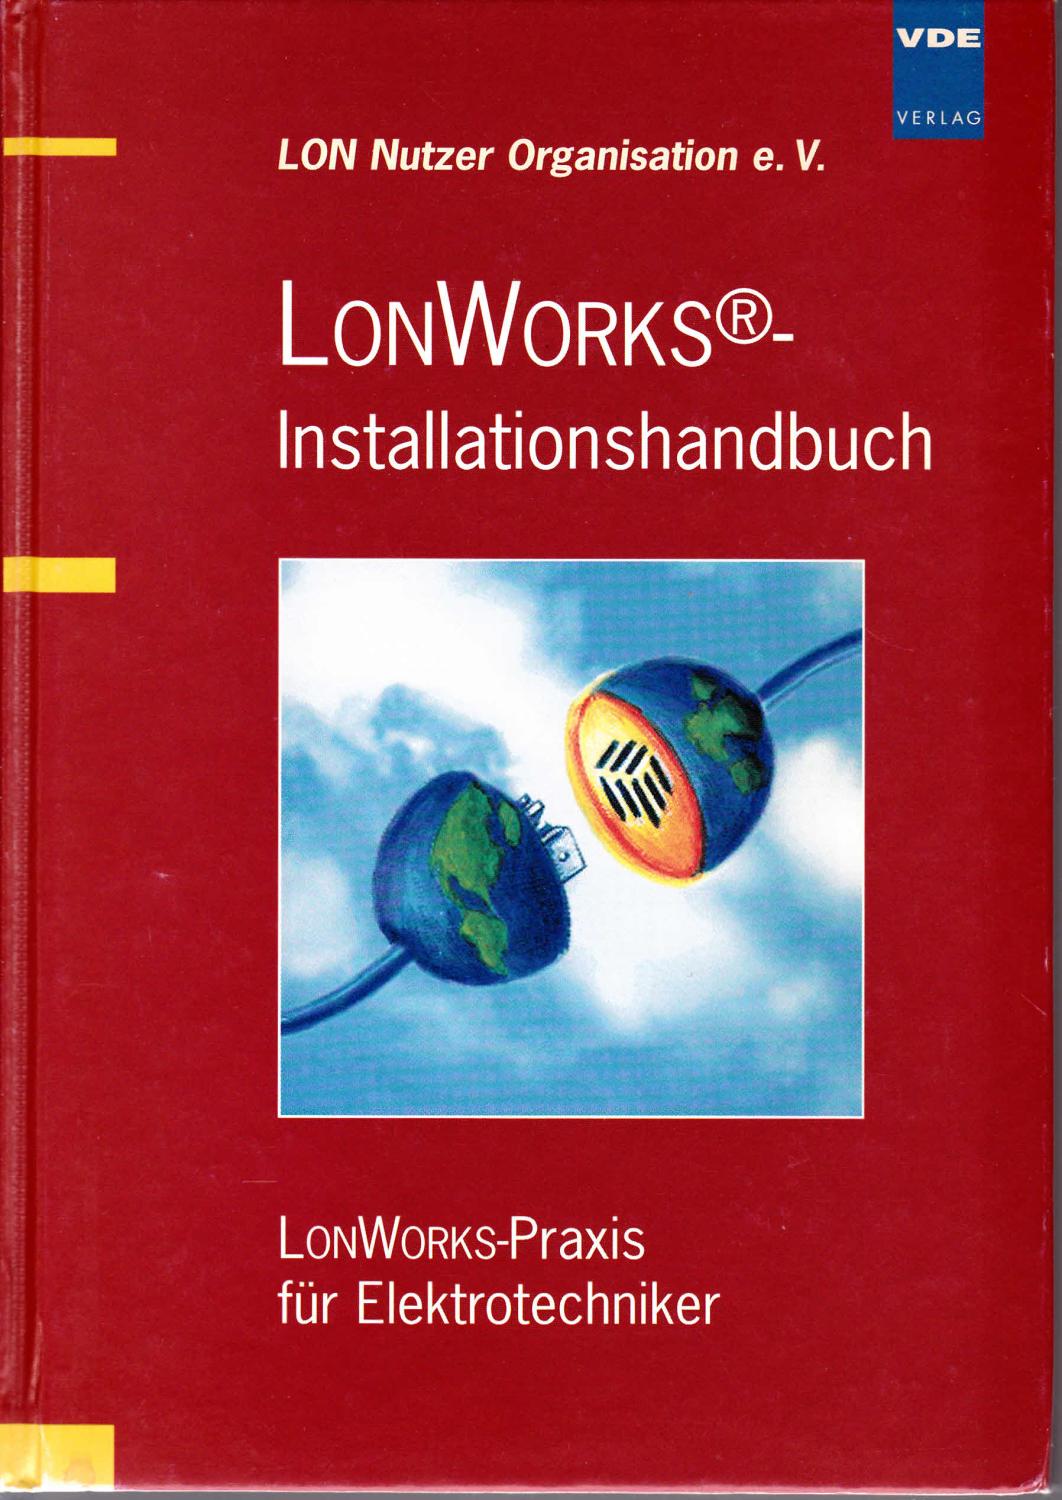 LONWORKS®-Installationshandbuch. LONWORKS-Praxis für Elektrotechniker - LON Nutzer Organisation e. V.